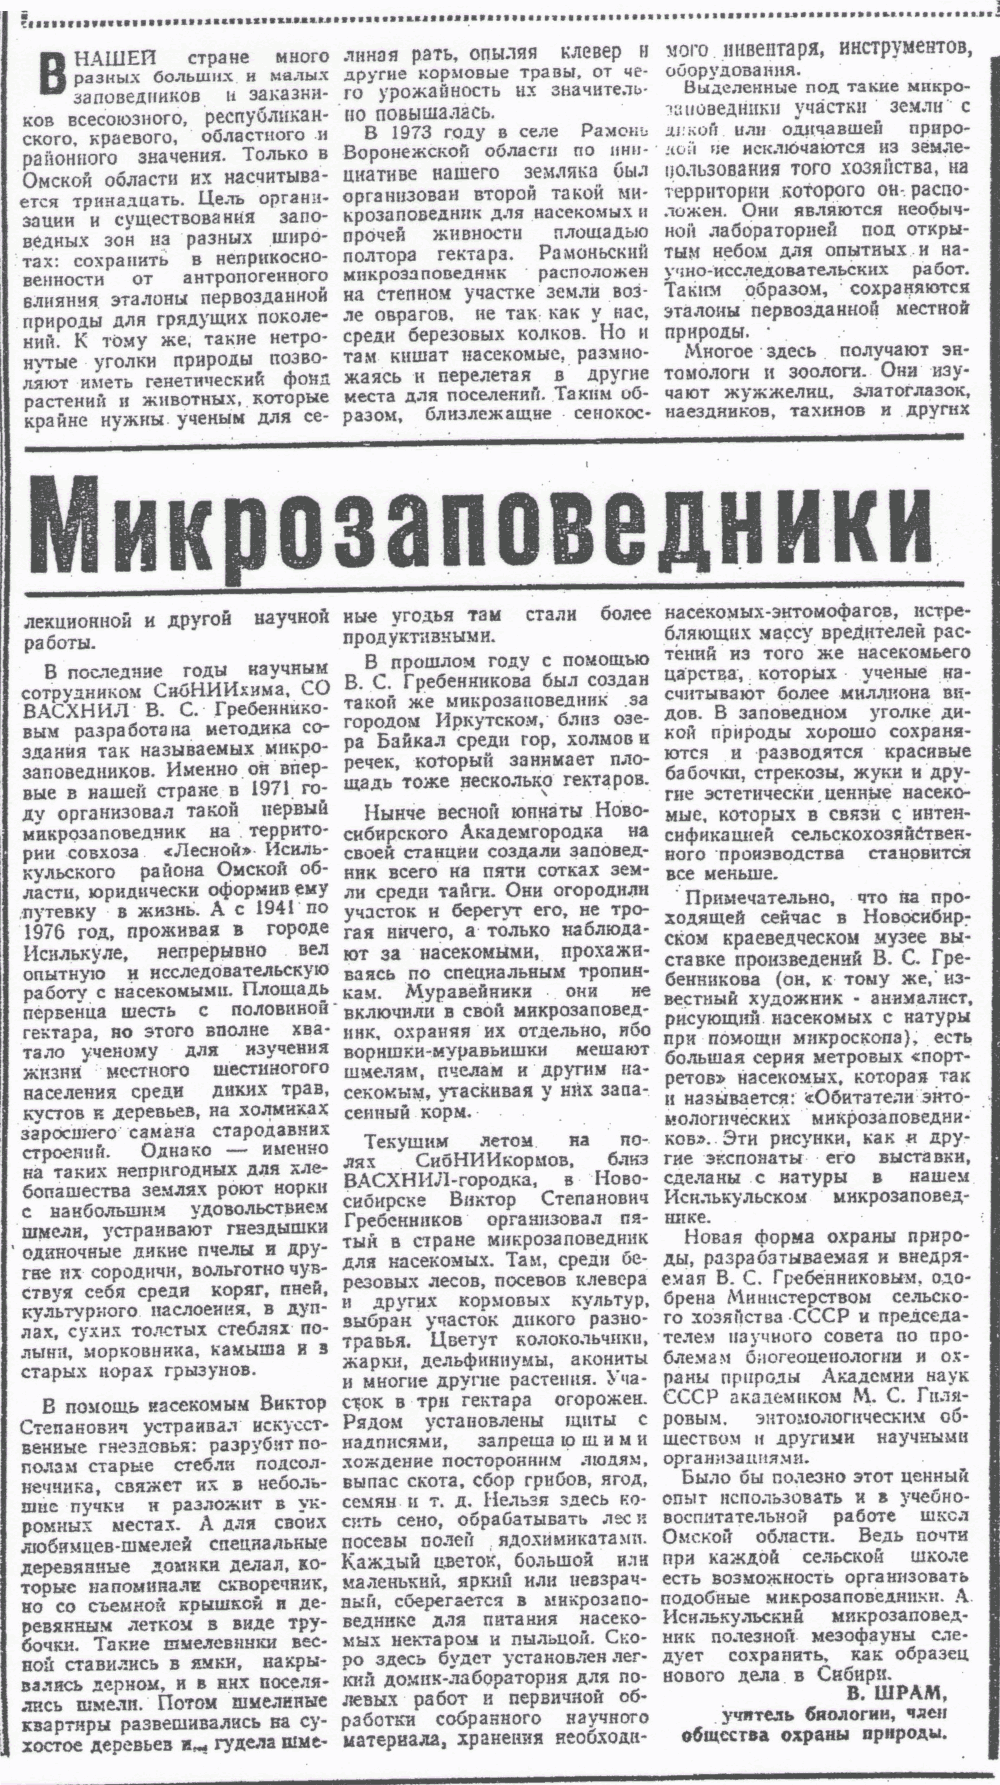 Микрозаповедники. В. Шрам. Омская правда, 21.08.1976.